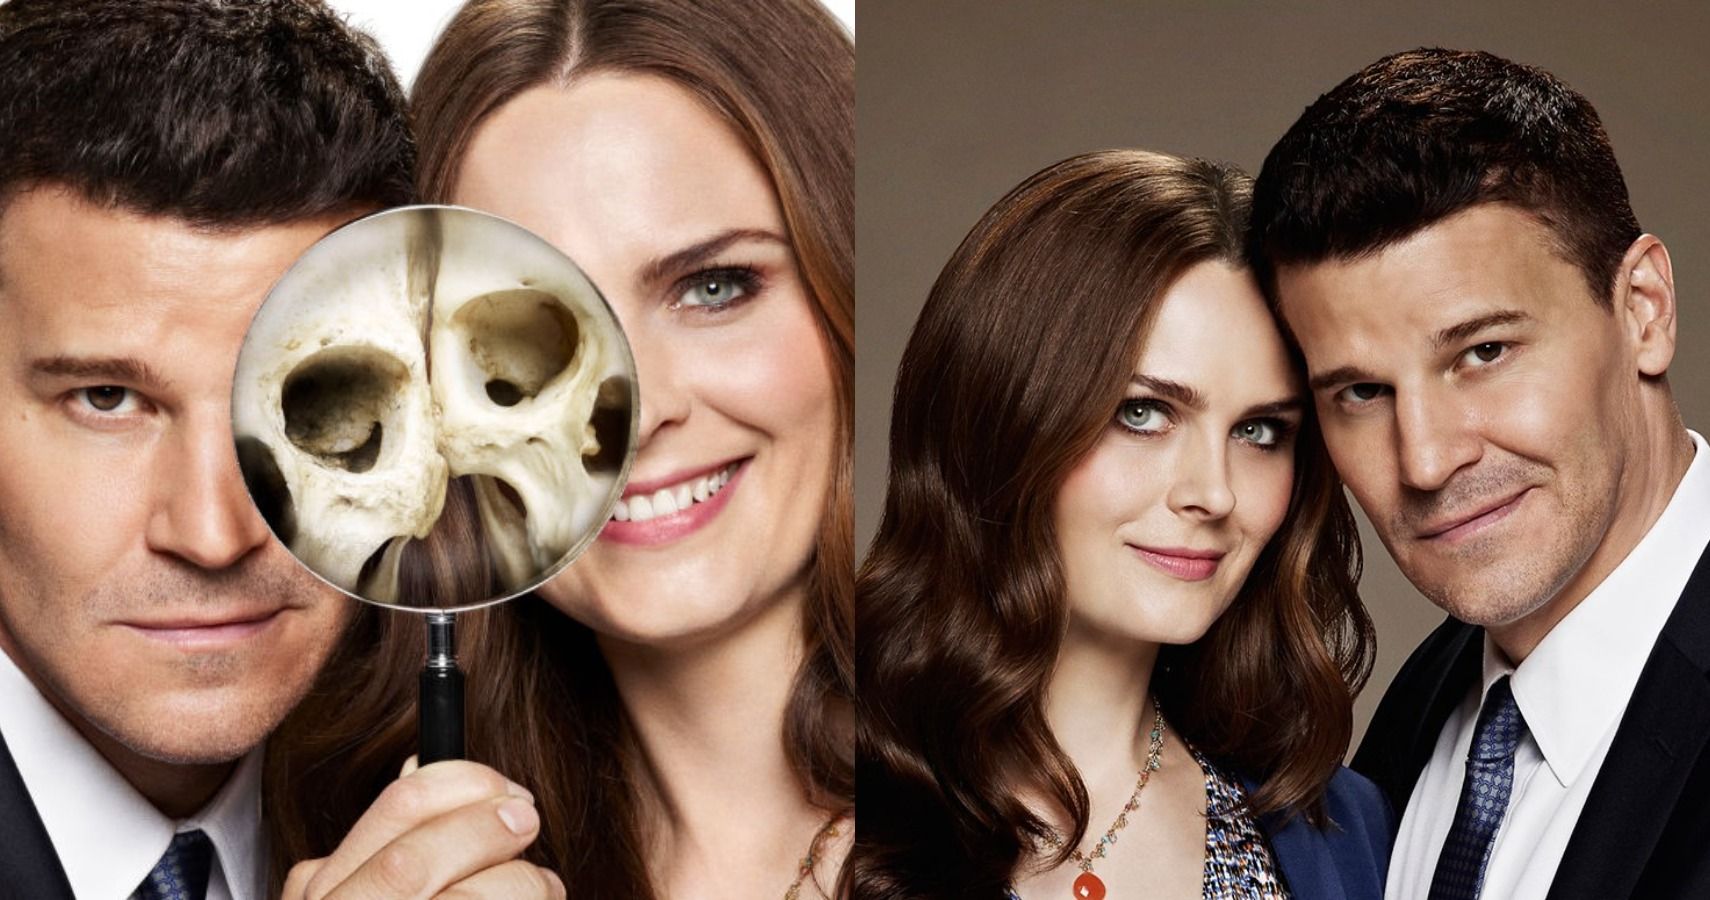 Bones: Booth & Brennan's Best Undercover Episodes